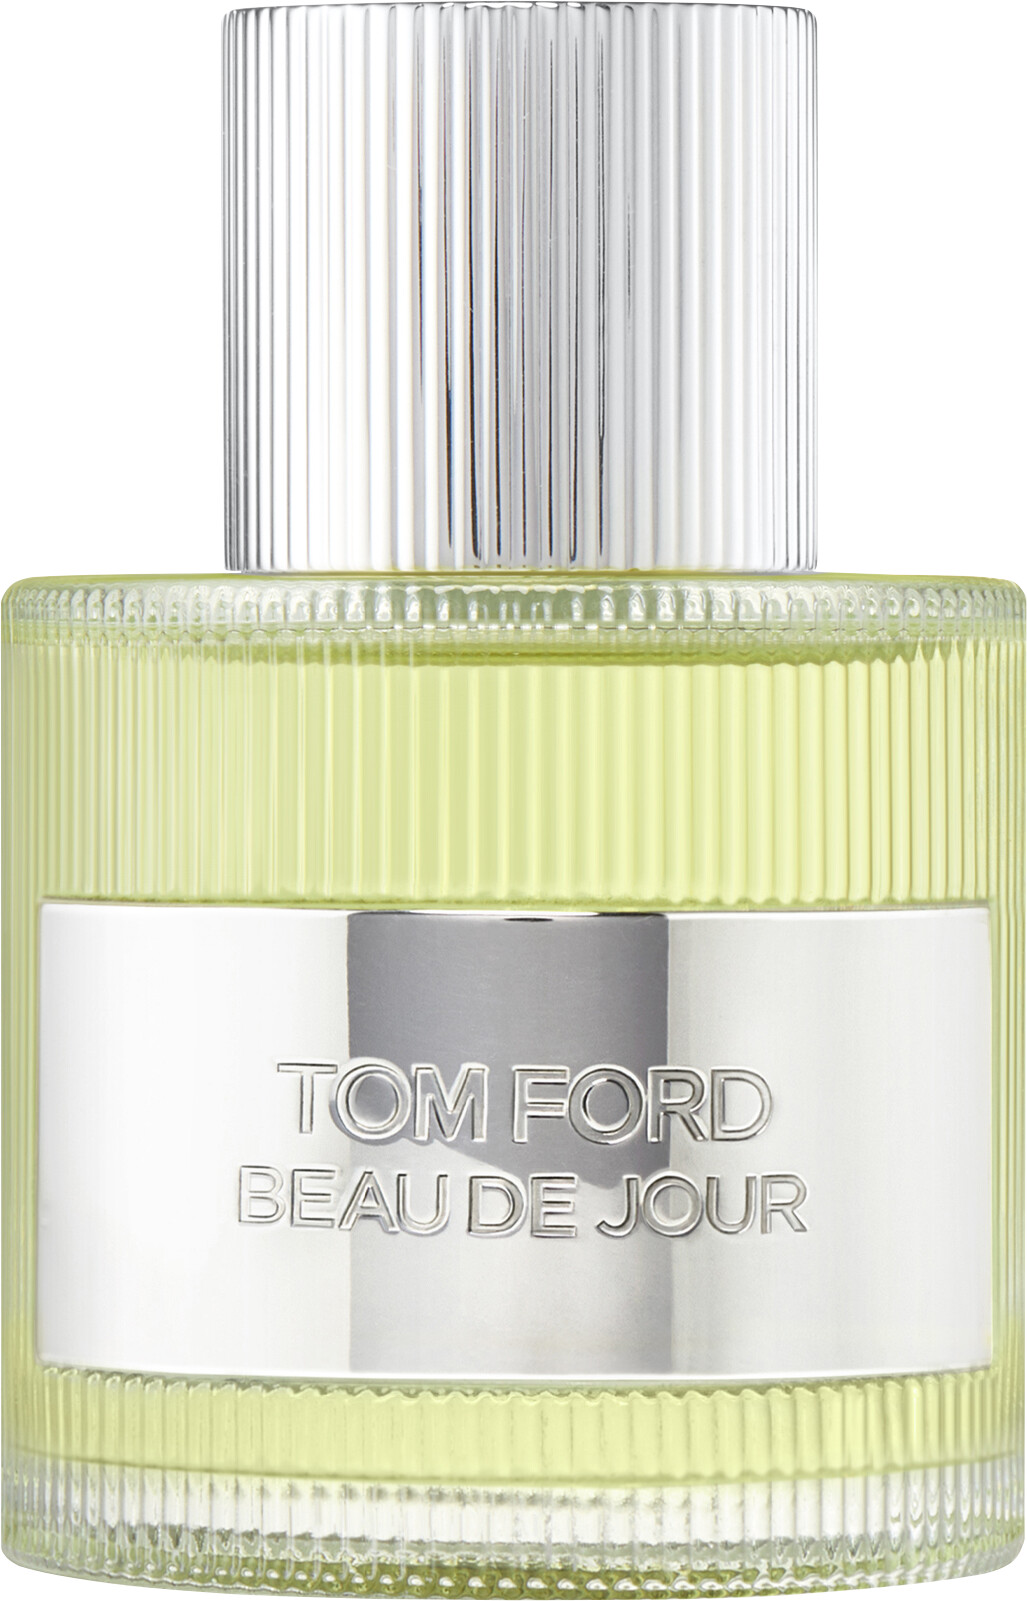 Tom Ford Beau de Jour Eau de Parfum Spray 50ml